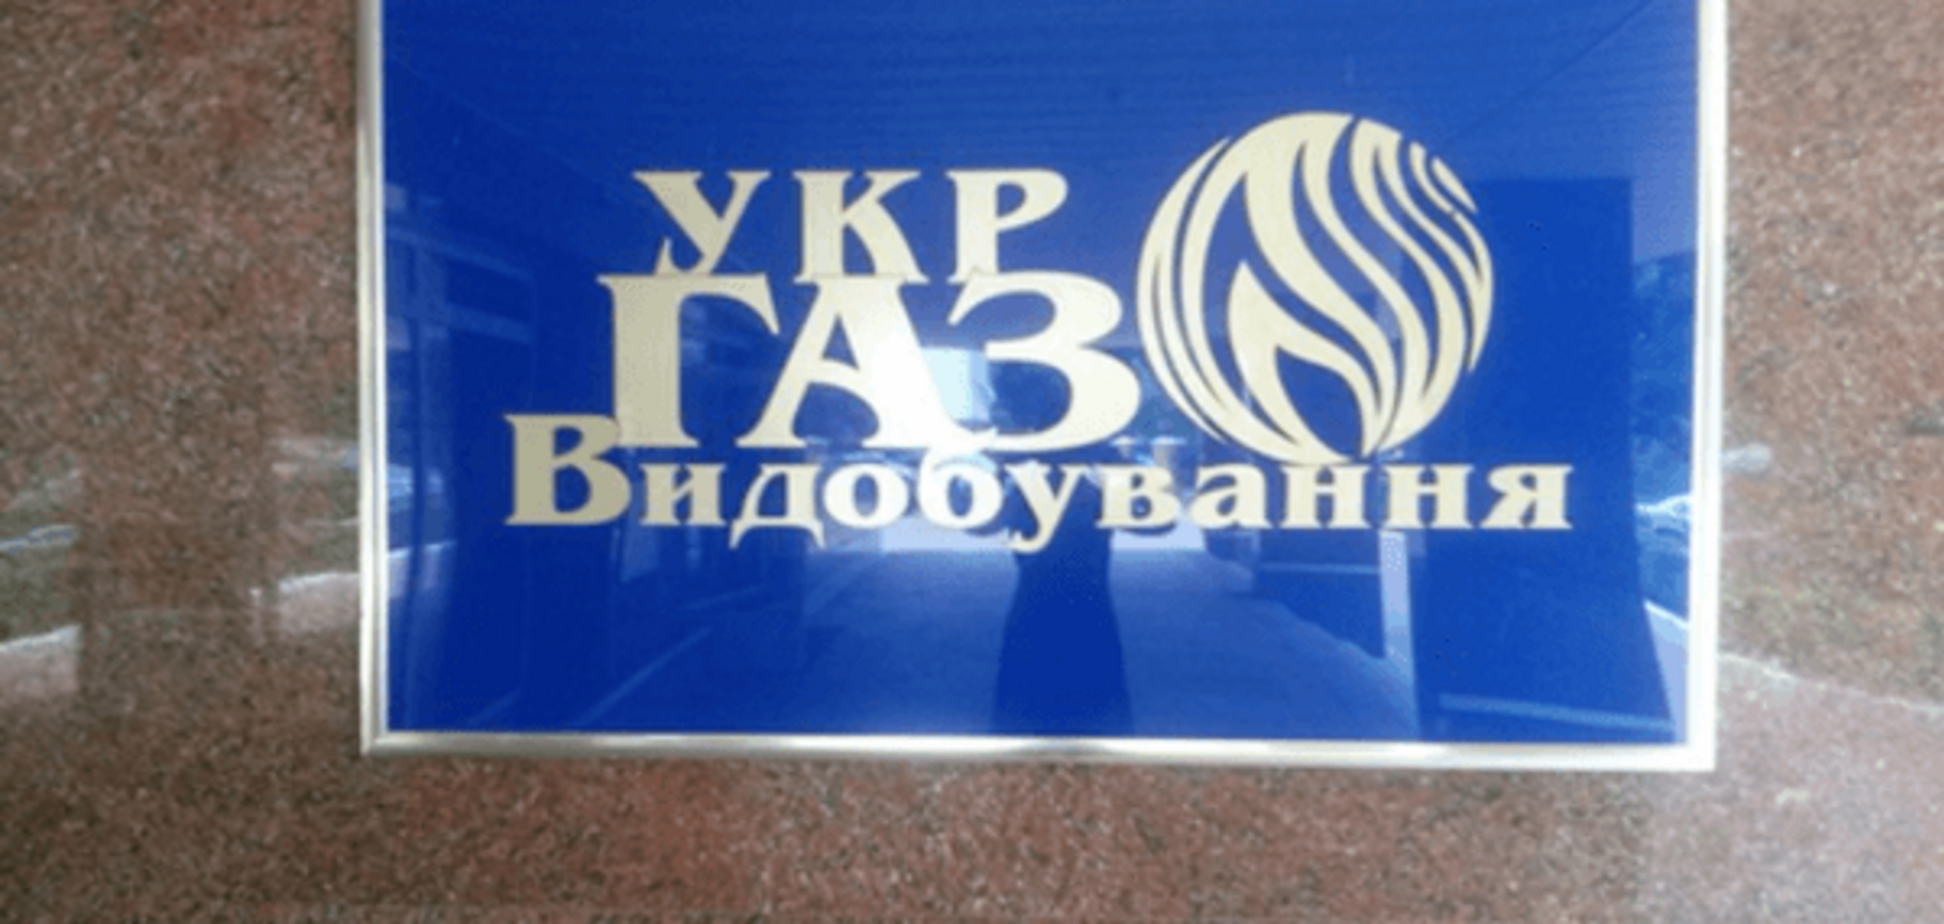 Суд арестовал банковские счета 'Укргаздобычи' - СМИ